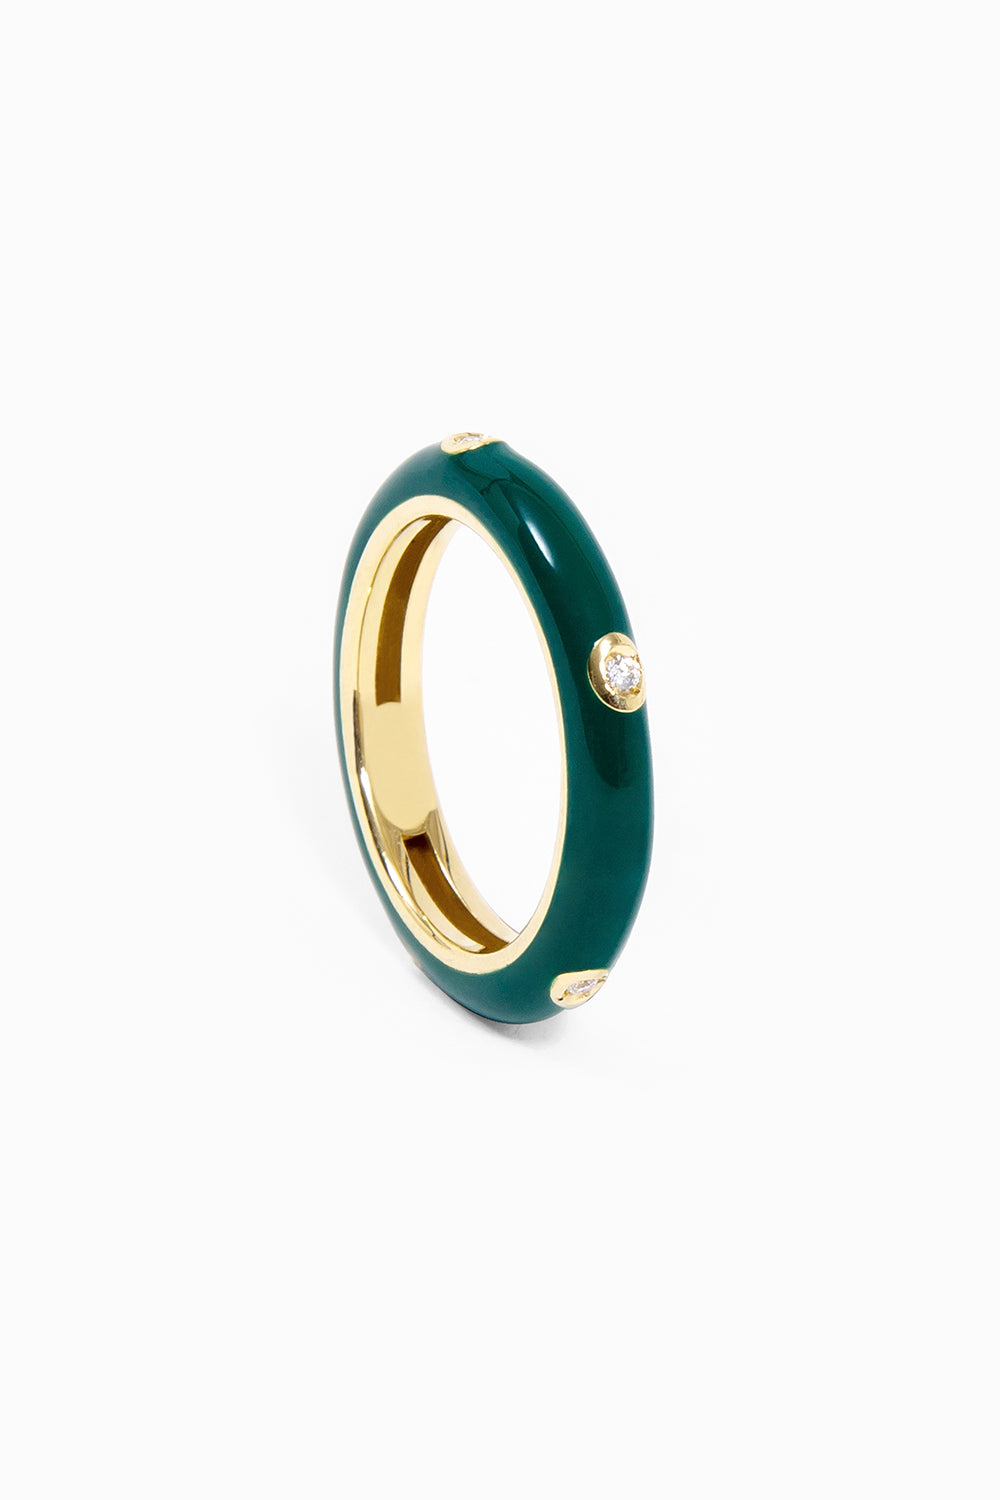 Enameled ring green